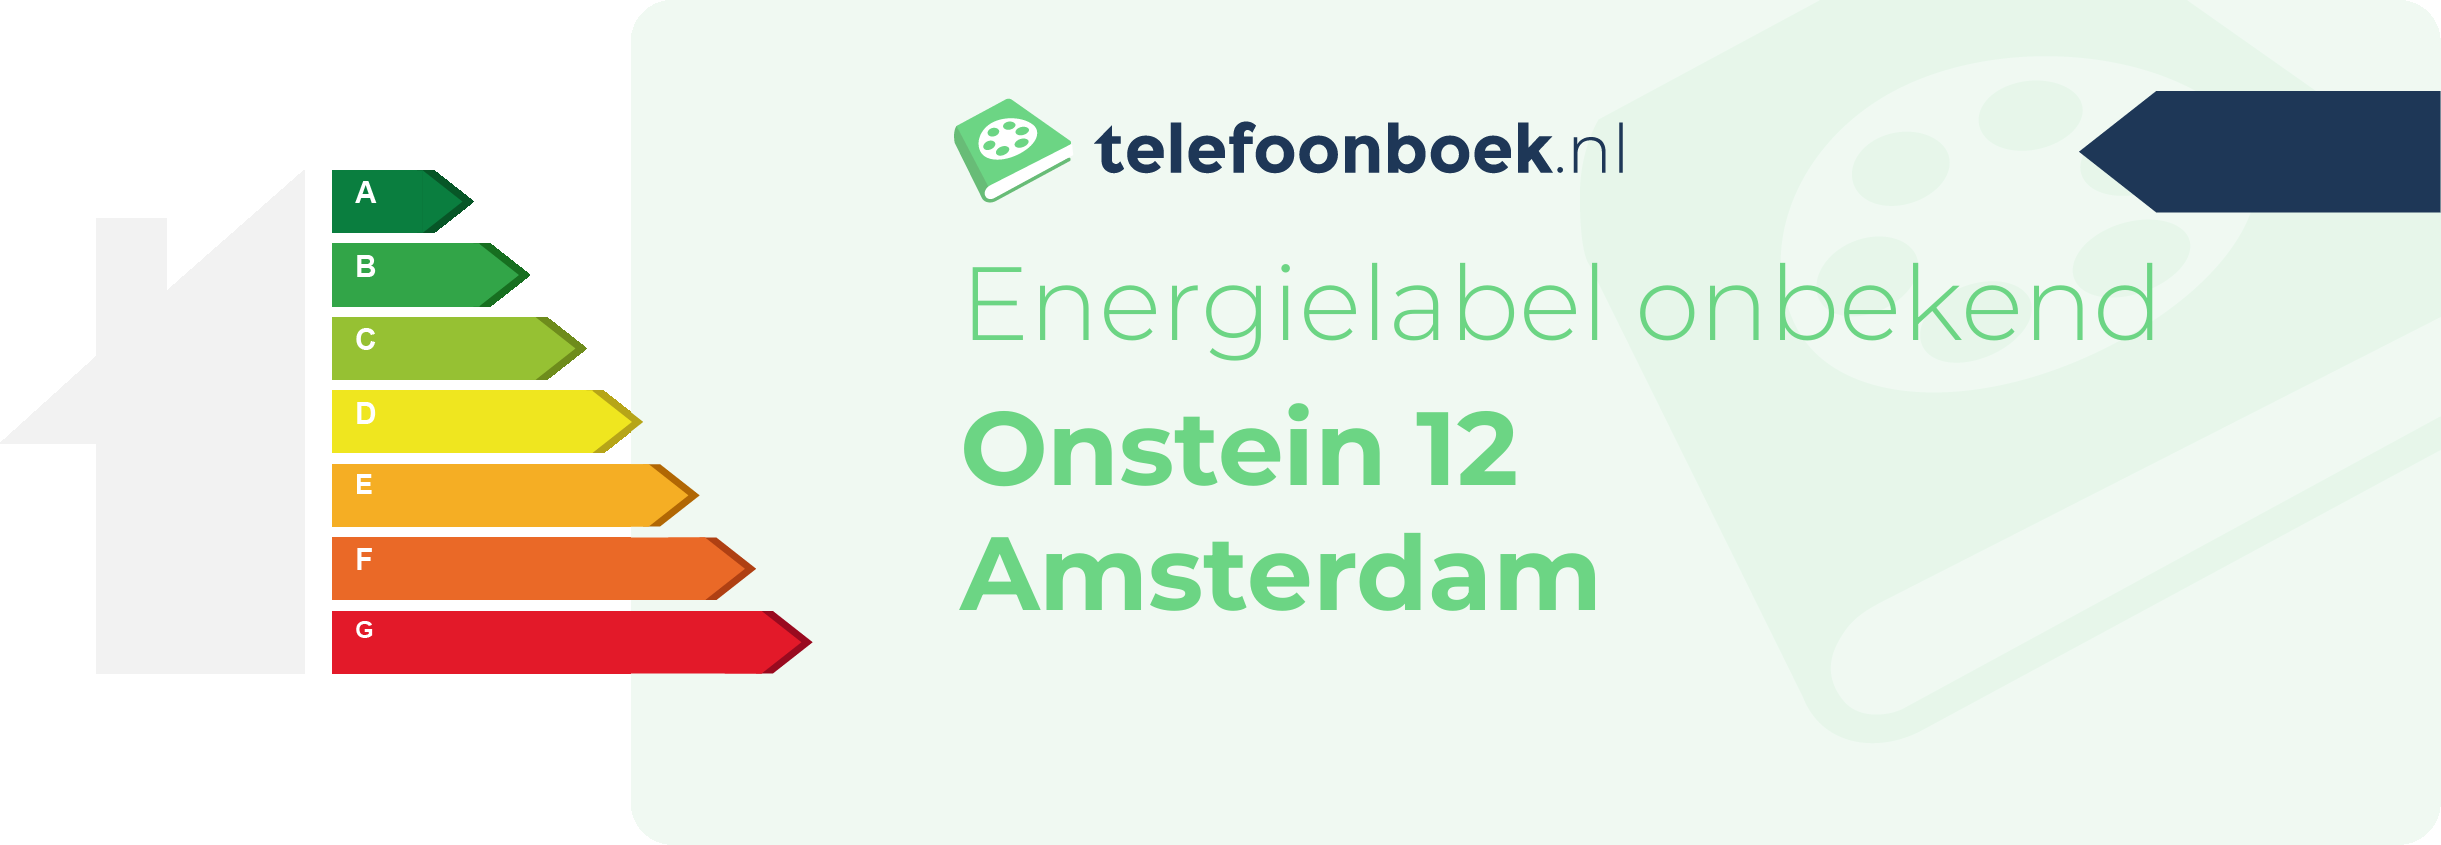 Energielabel Onstein 12 Amsterdam